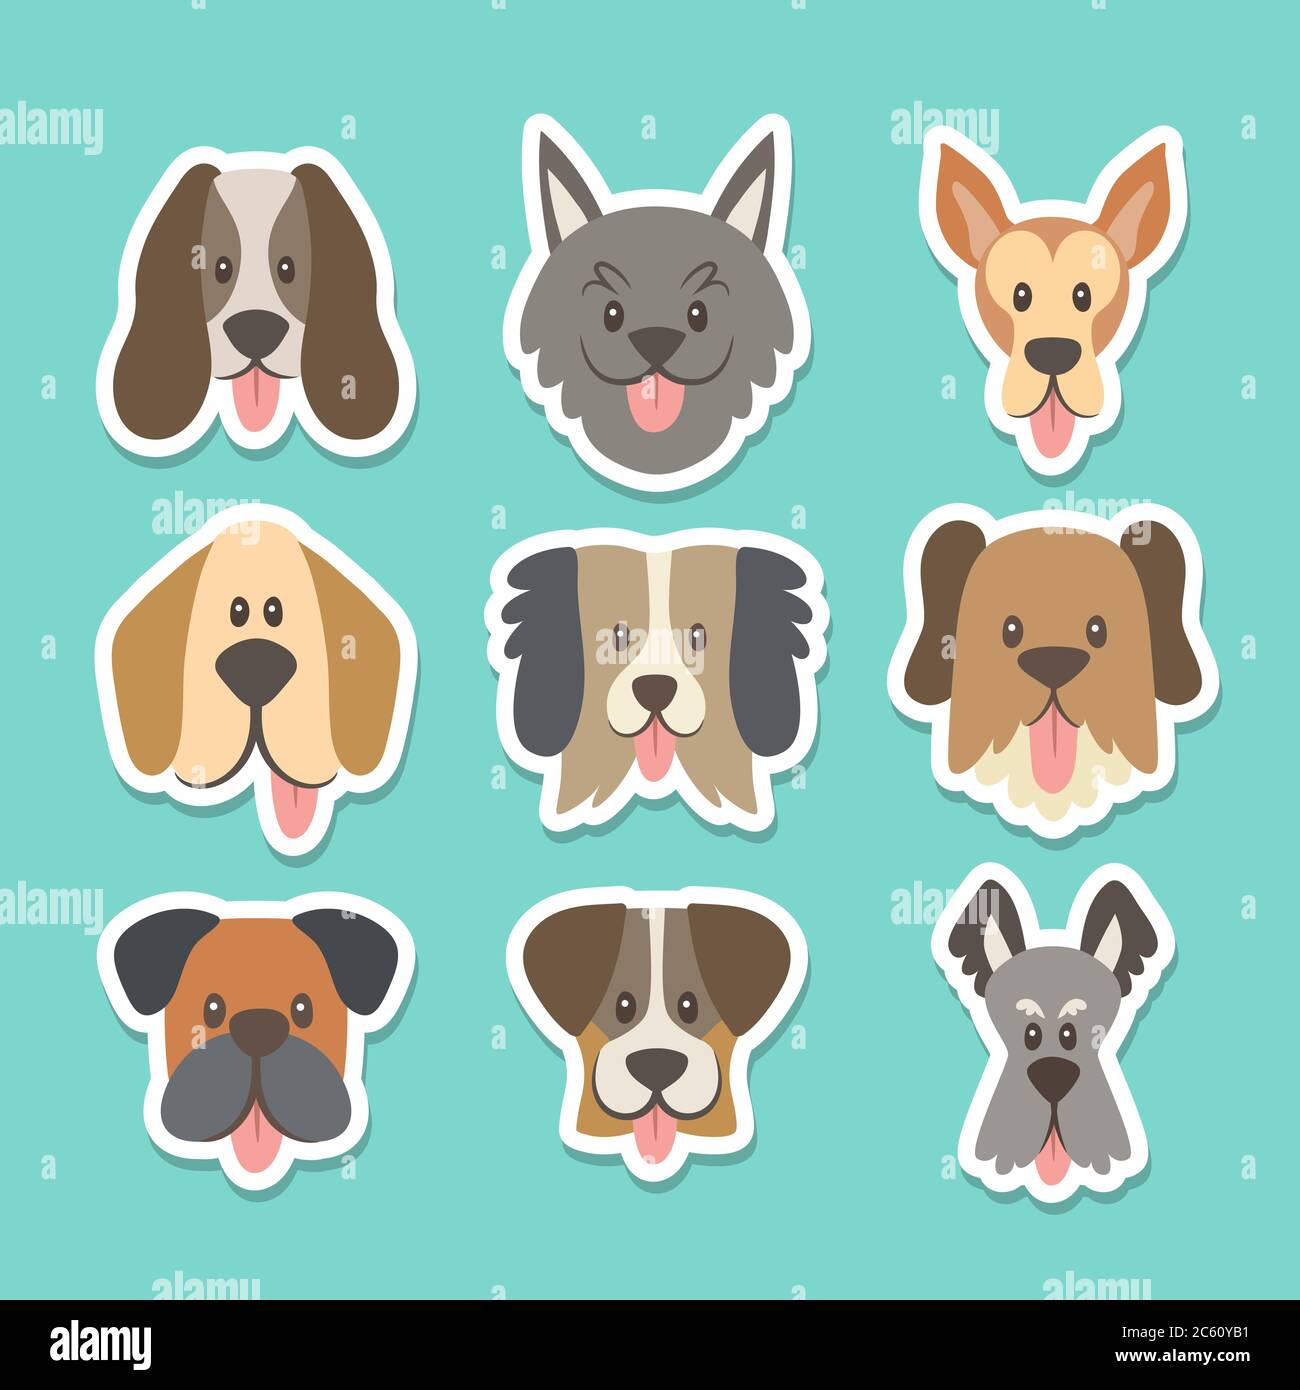 Niedliche Sticker-Kollektion mit verschiedenen Hunderassen im Cartoon-Stil. Vektorgrafik. Stock Vektor